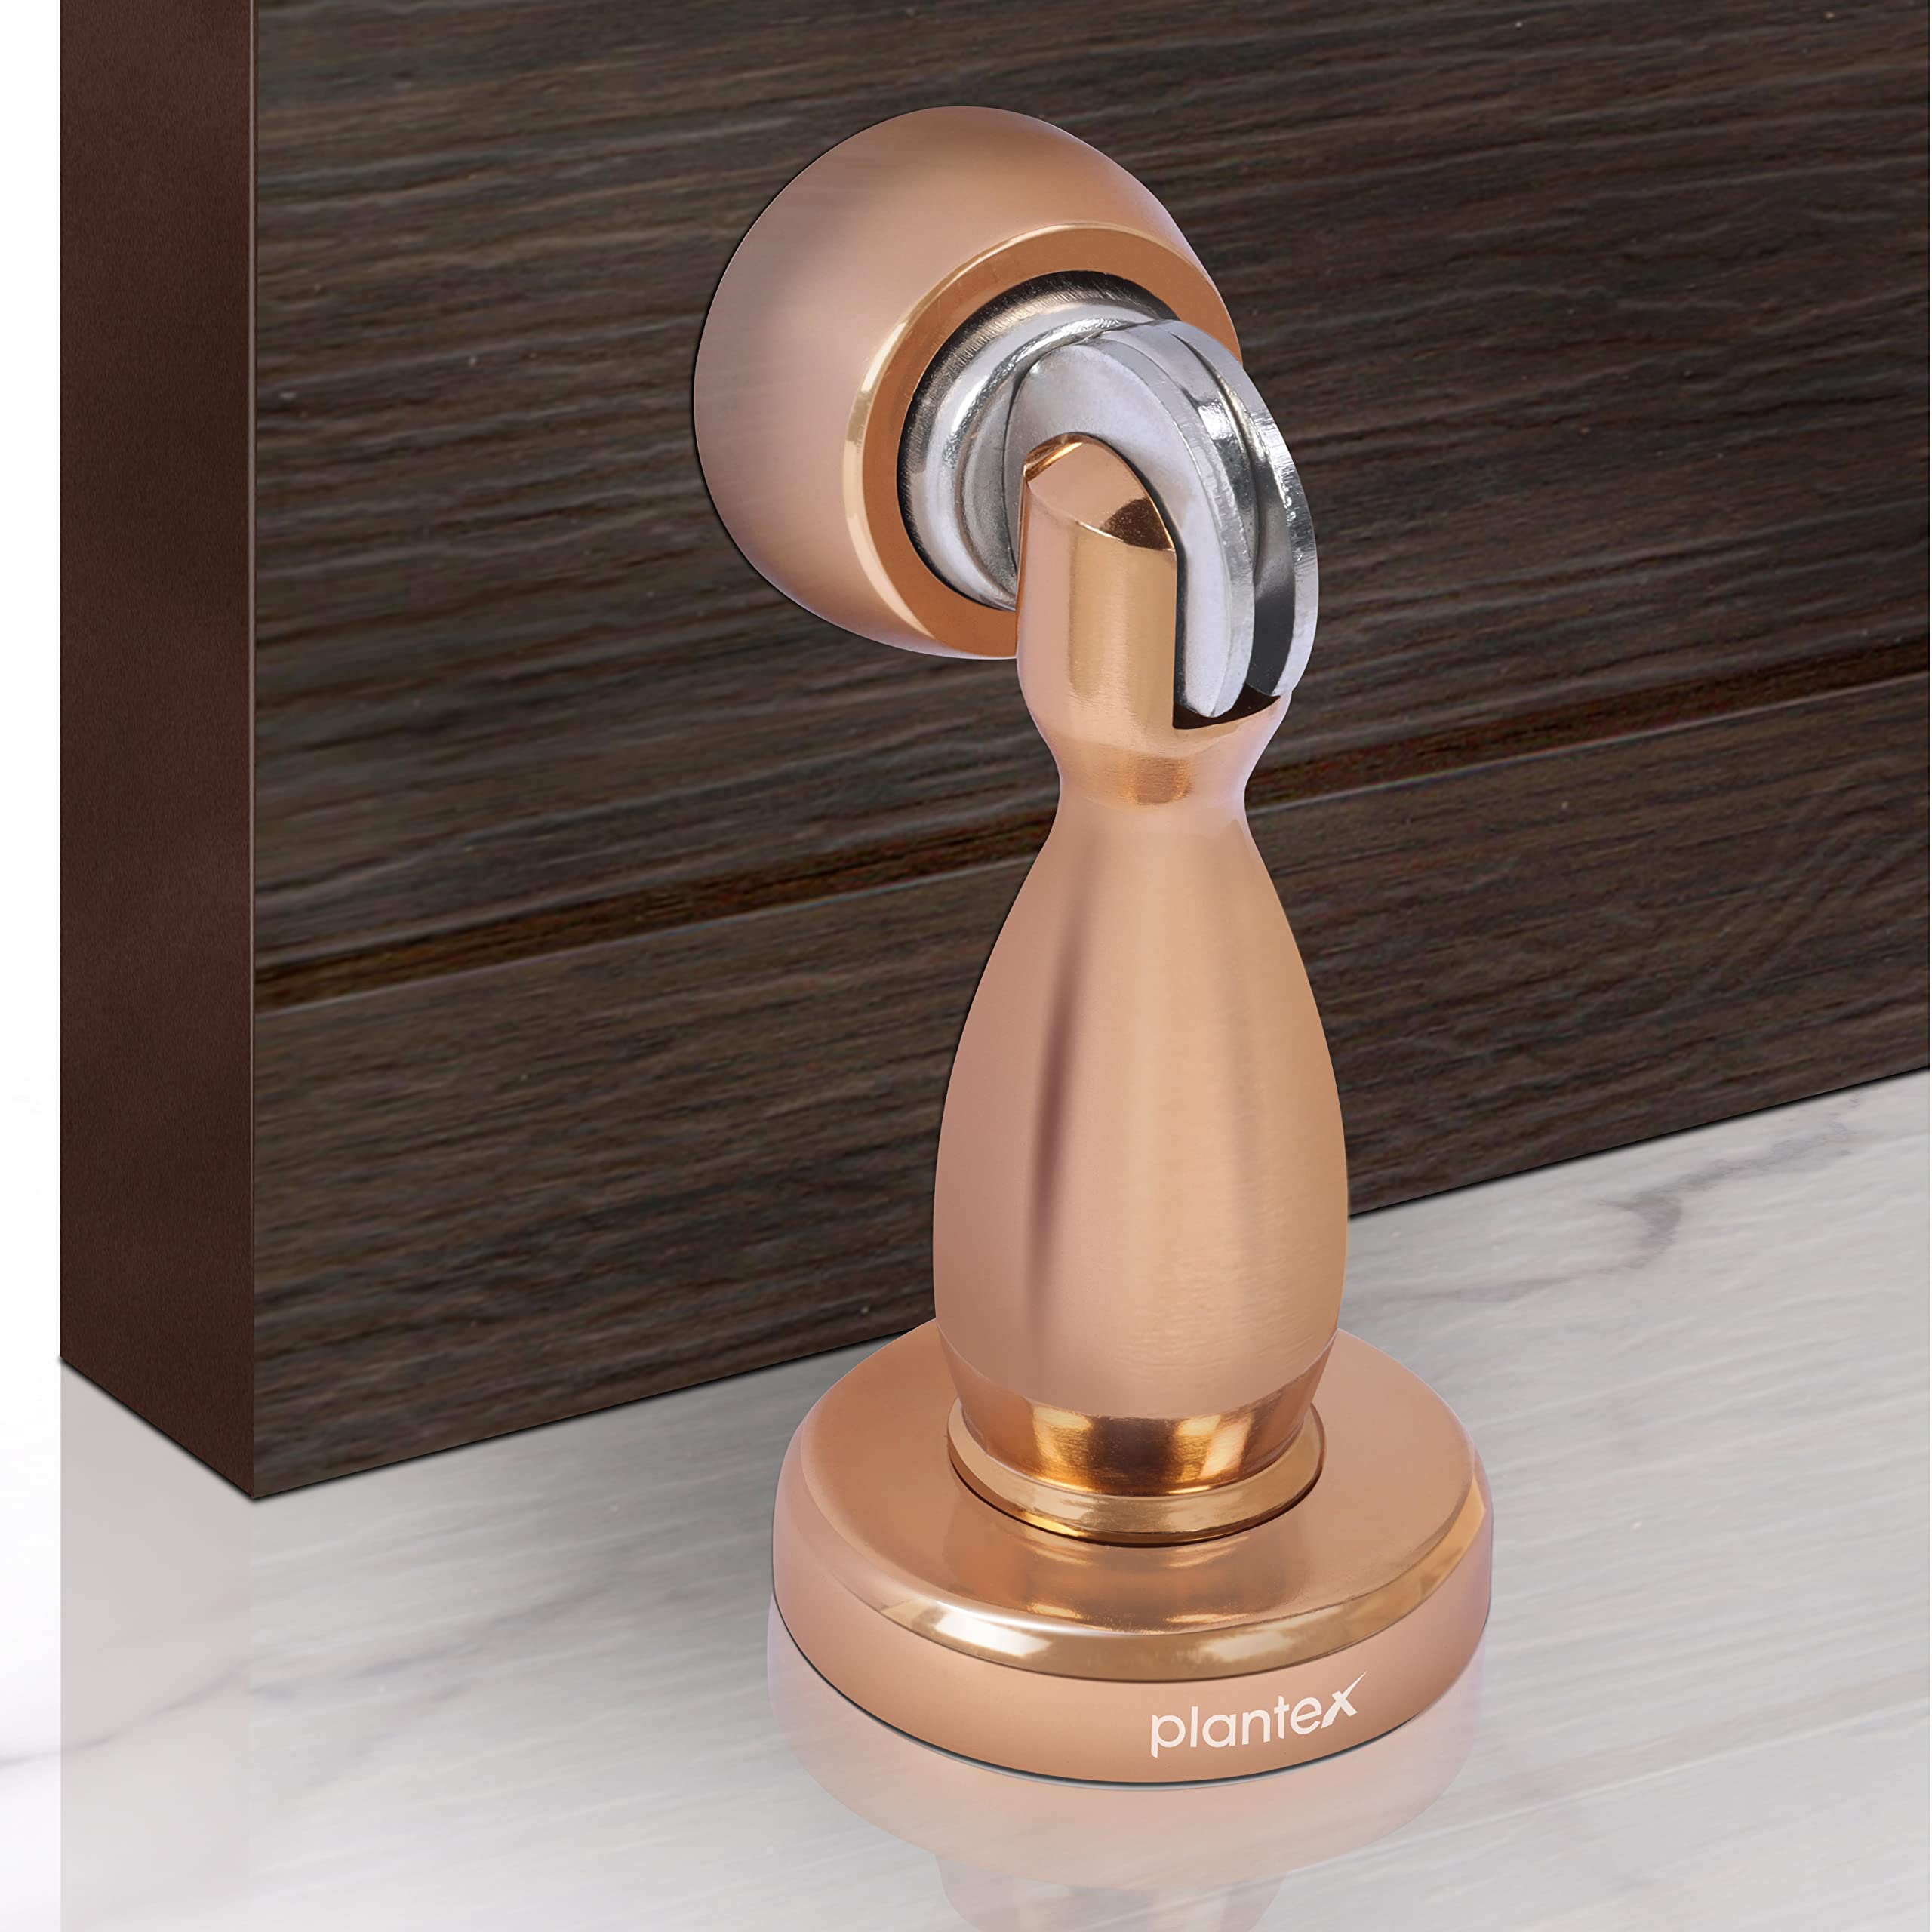 Plantex Magnetic Door Stopper for Home/ 360 Degree Magnet Door Catcher/Door Holder for Main Door/Bedroom/Office and Hotel Door - Pack of 10 (4 inch, Rose Gold)